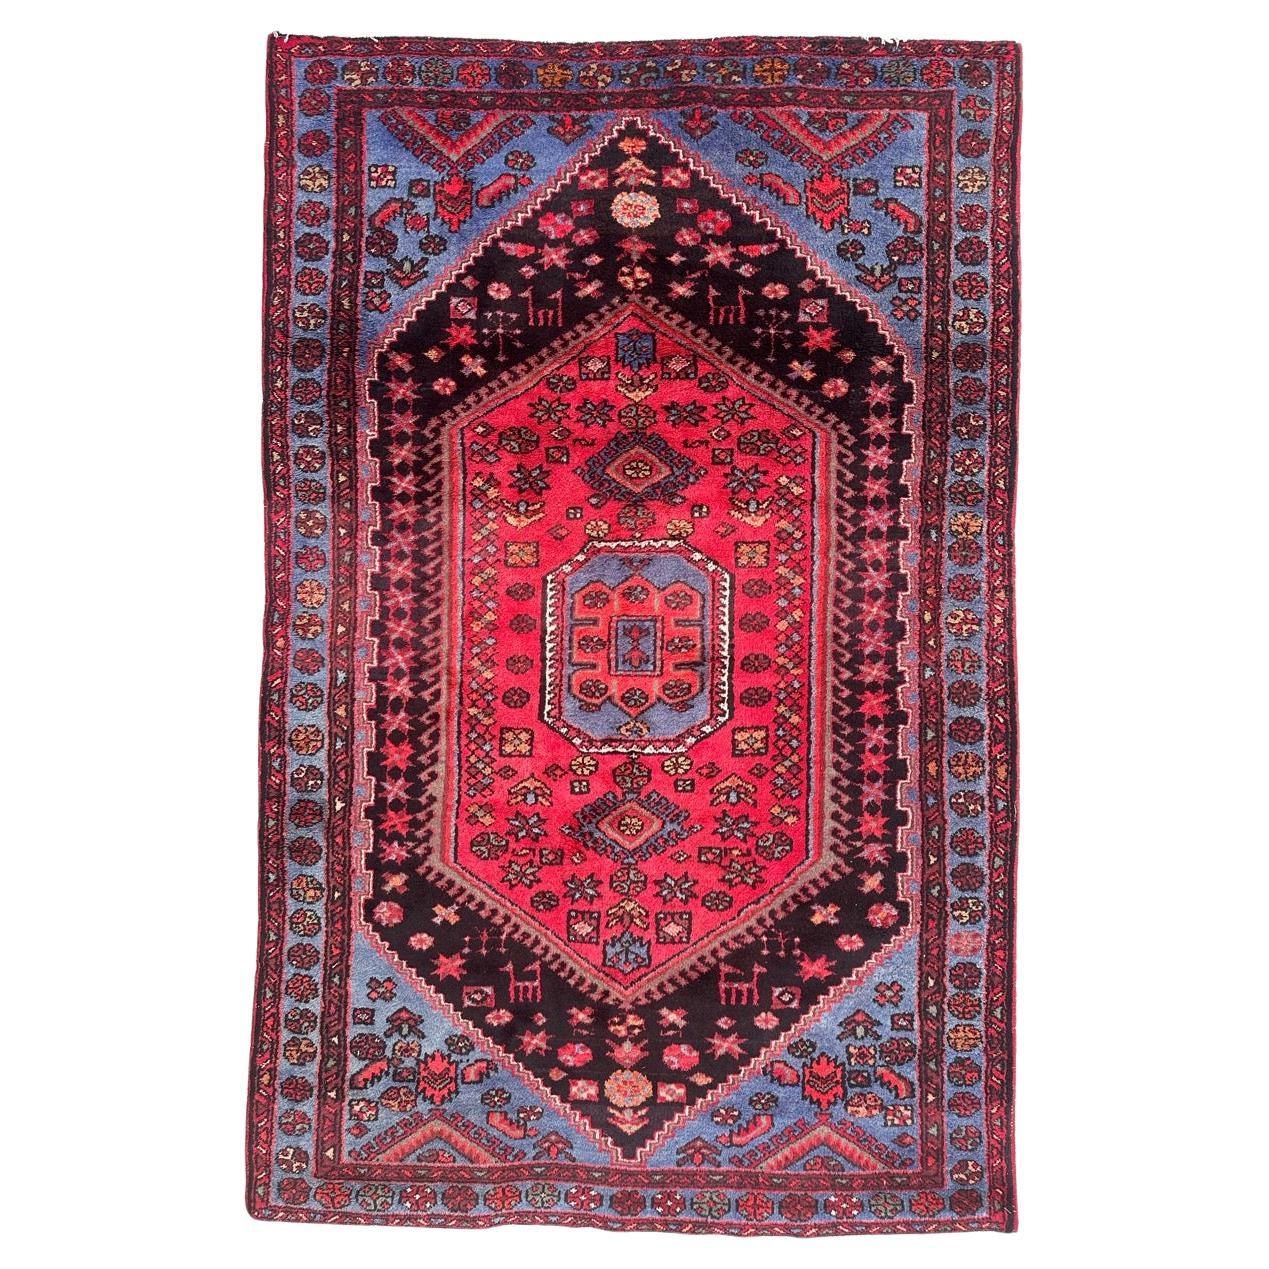  pretty vintage Hamadan rug